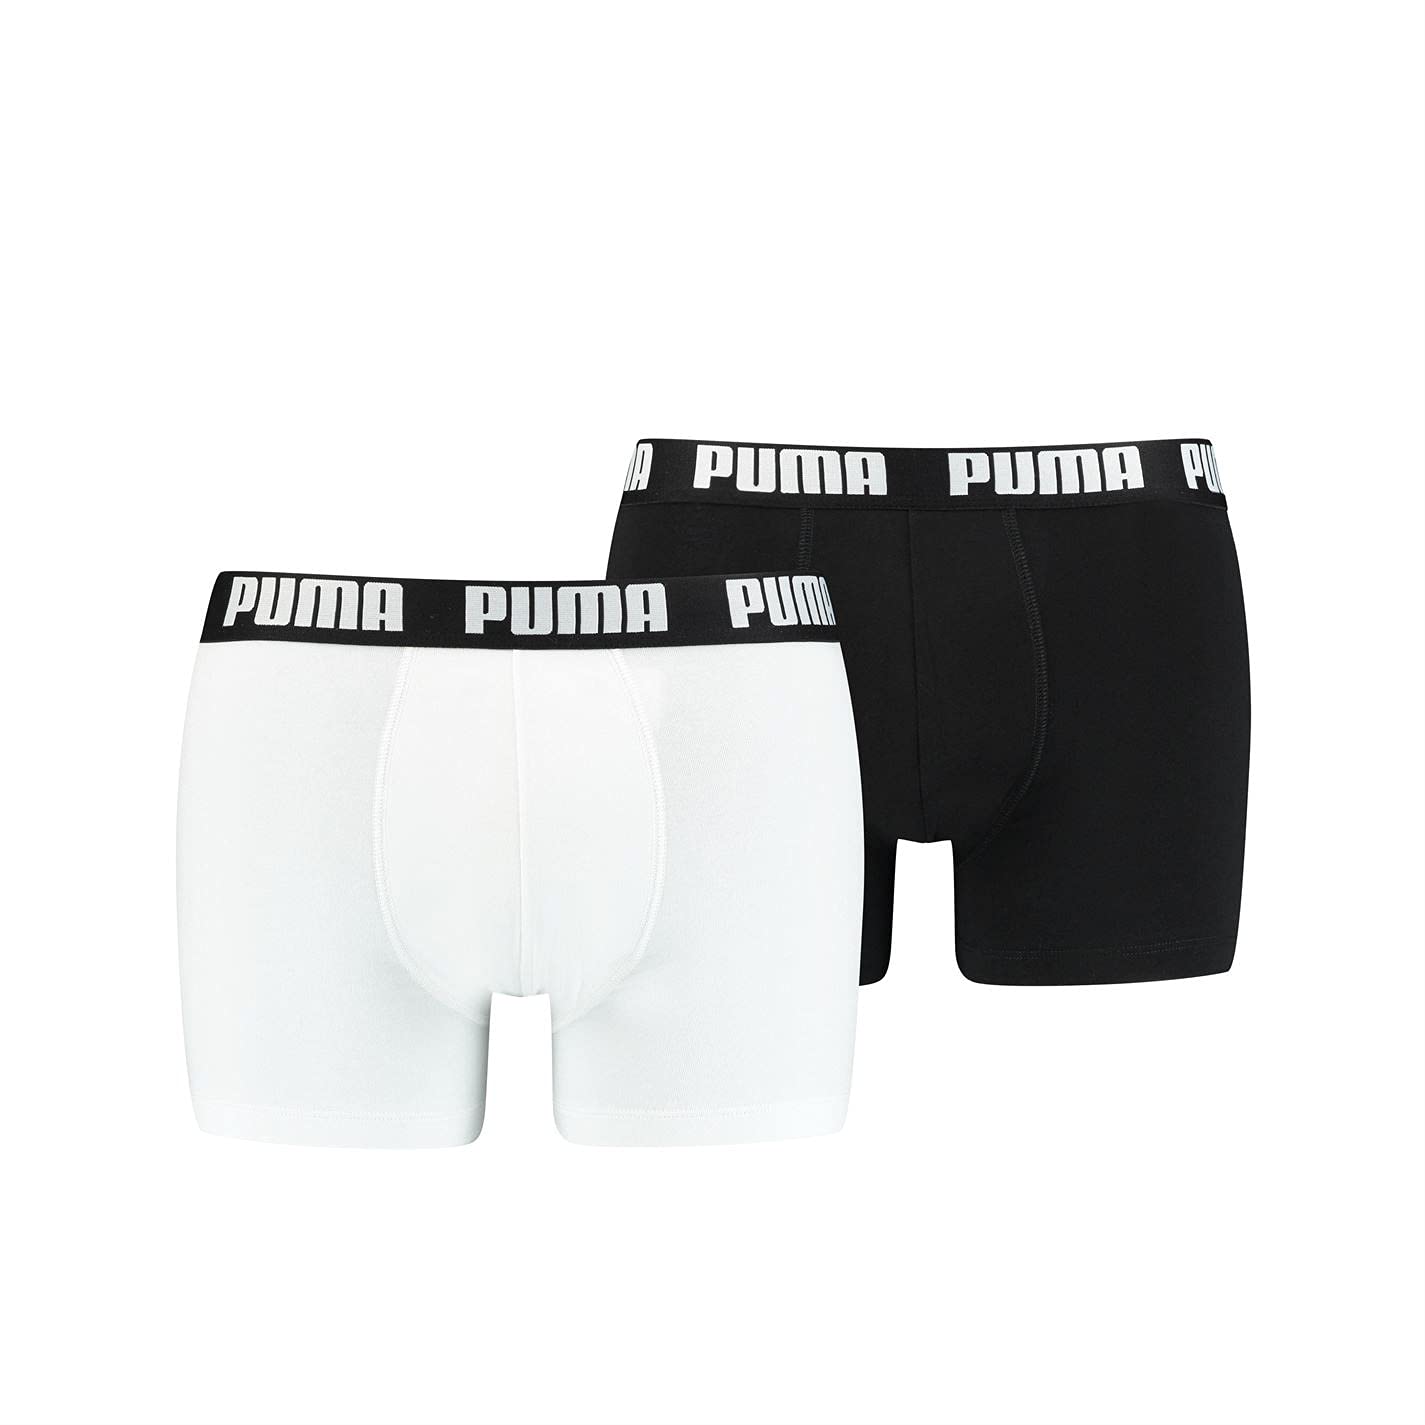 PUMA Herren Basic Boxer (2er Pack) Boxershorts, Weiß/Schwarz, XL